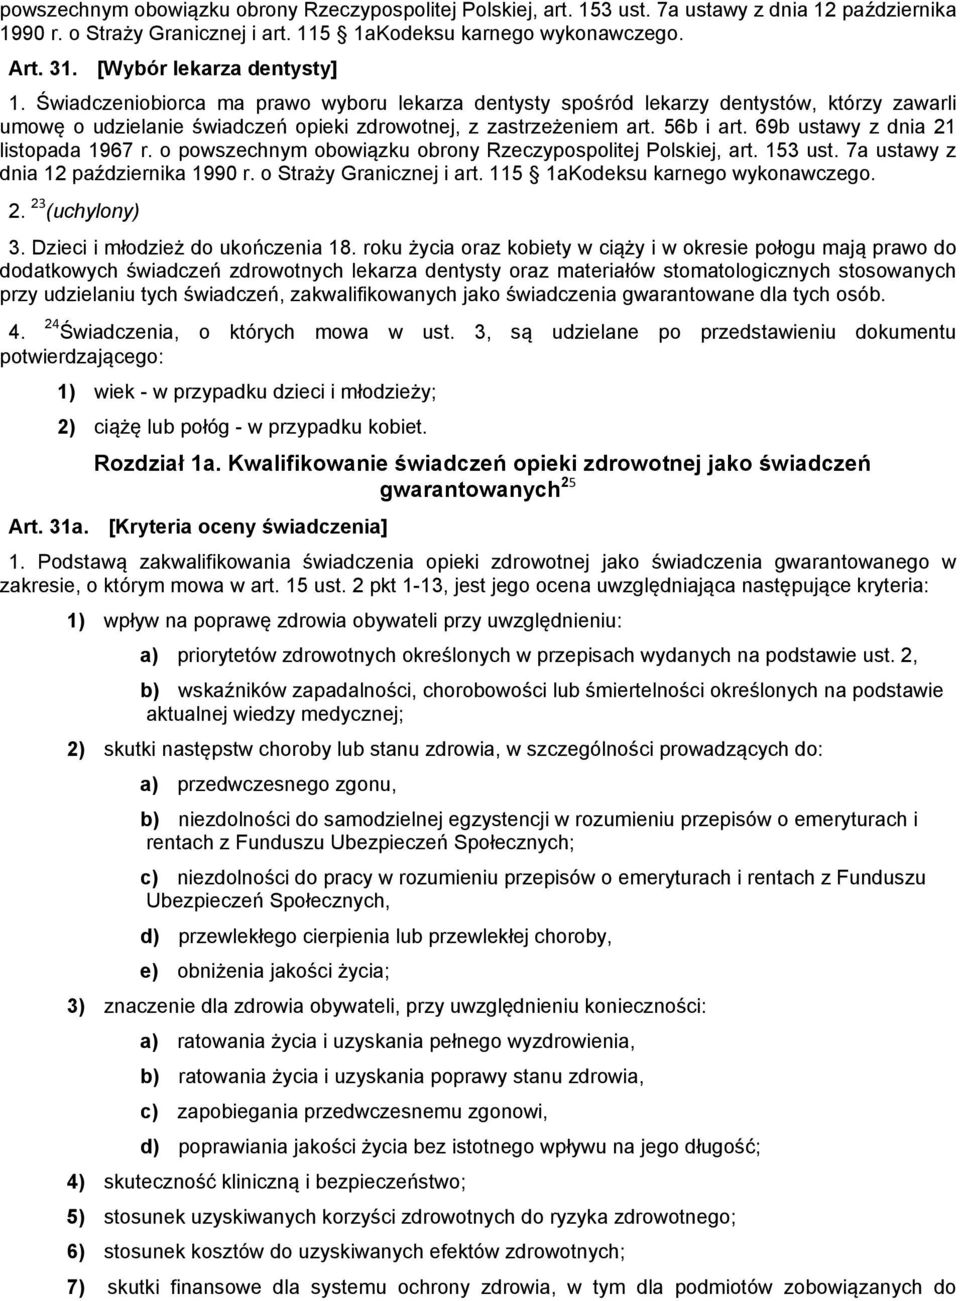 69b ustawy z dnia 21 listopada 1967 r. o powszechnym obowiązku obrony Rzeczypospolitej Polskiej, art. 153 ust. 7a ustawy z dnia 12 października 1990 r. o Straży Granicznej i art.